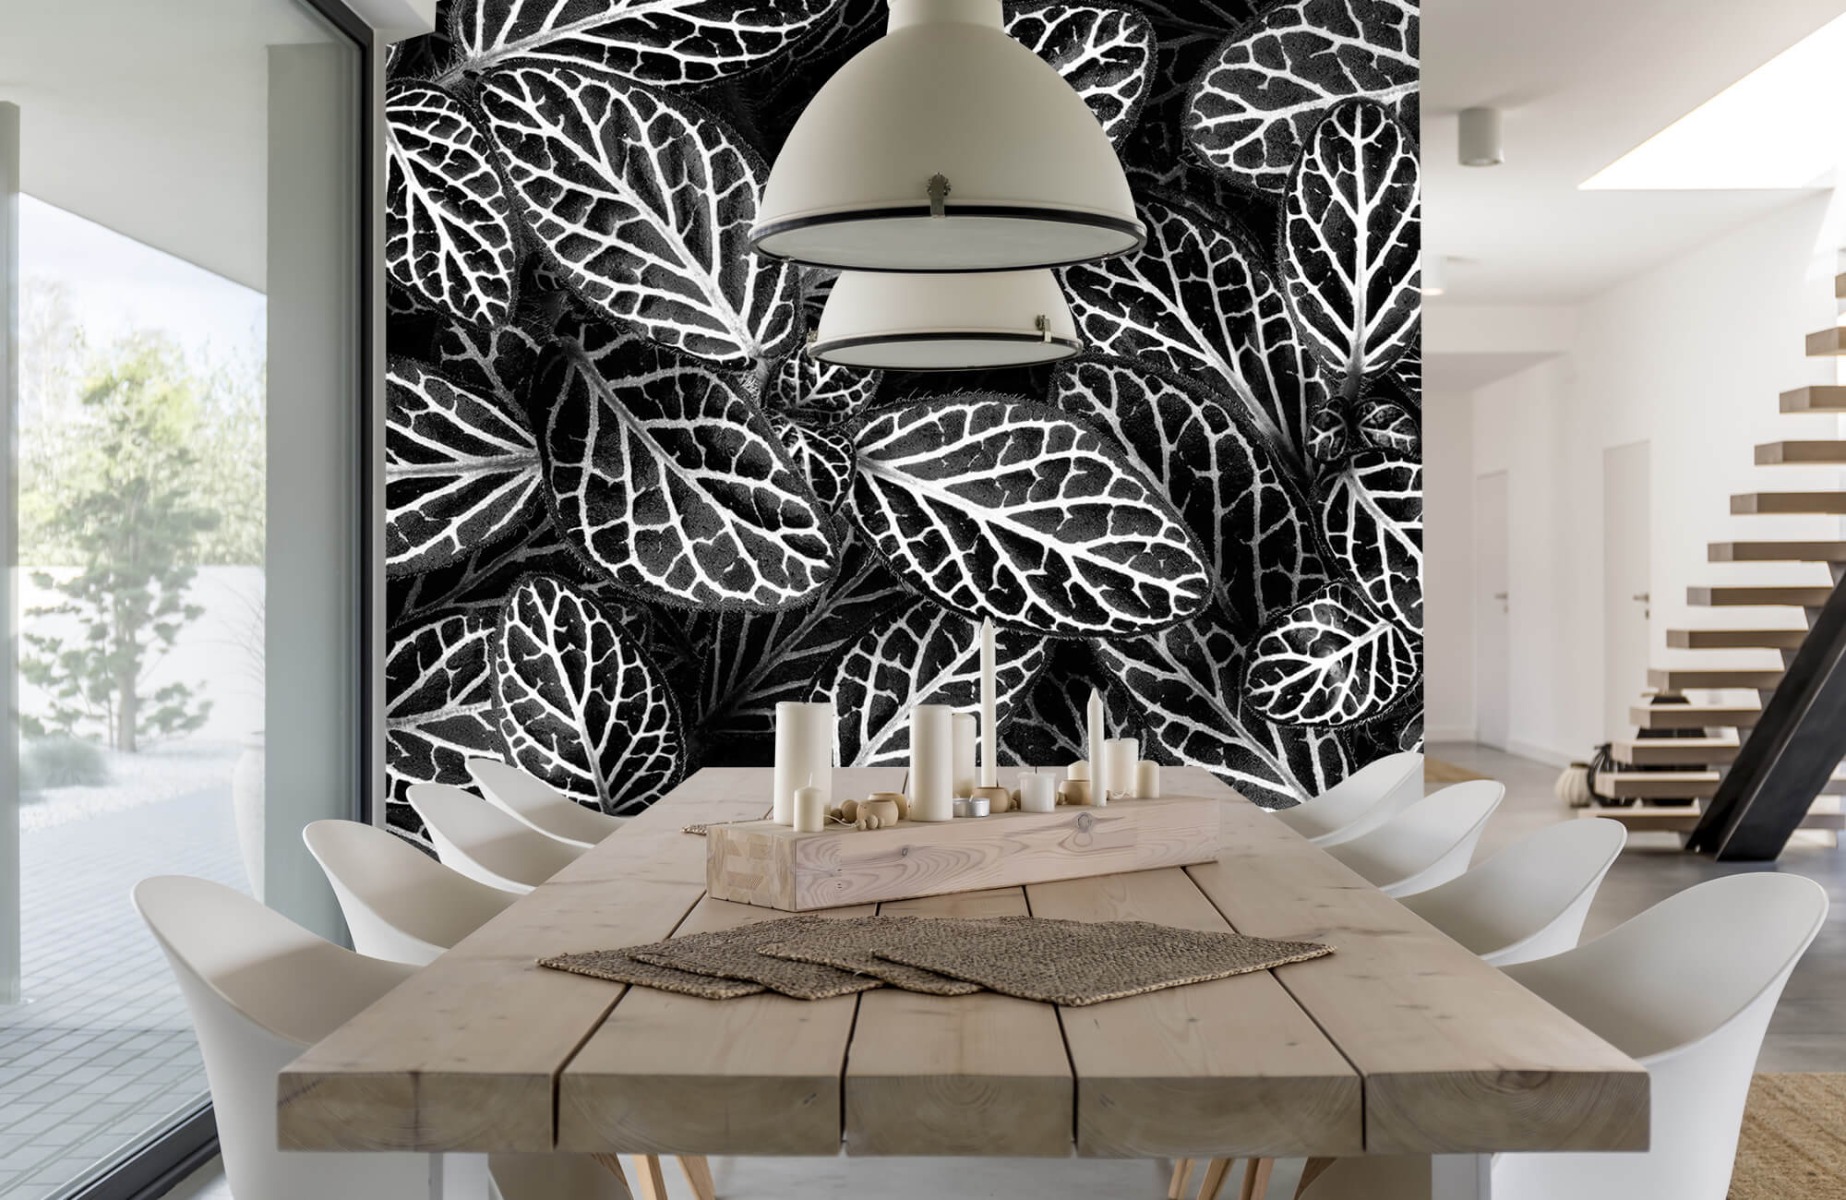 Blanco y negro - Papel pintado con Fittonia - Sala de reuniones 16